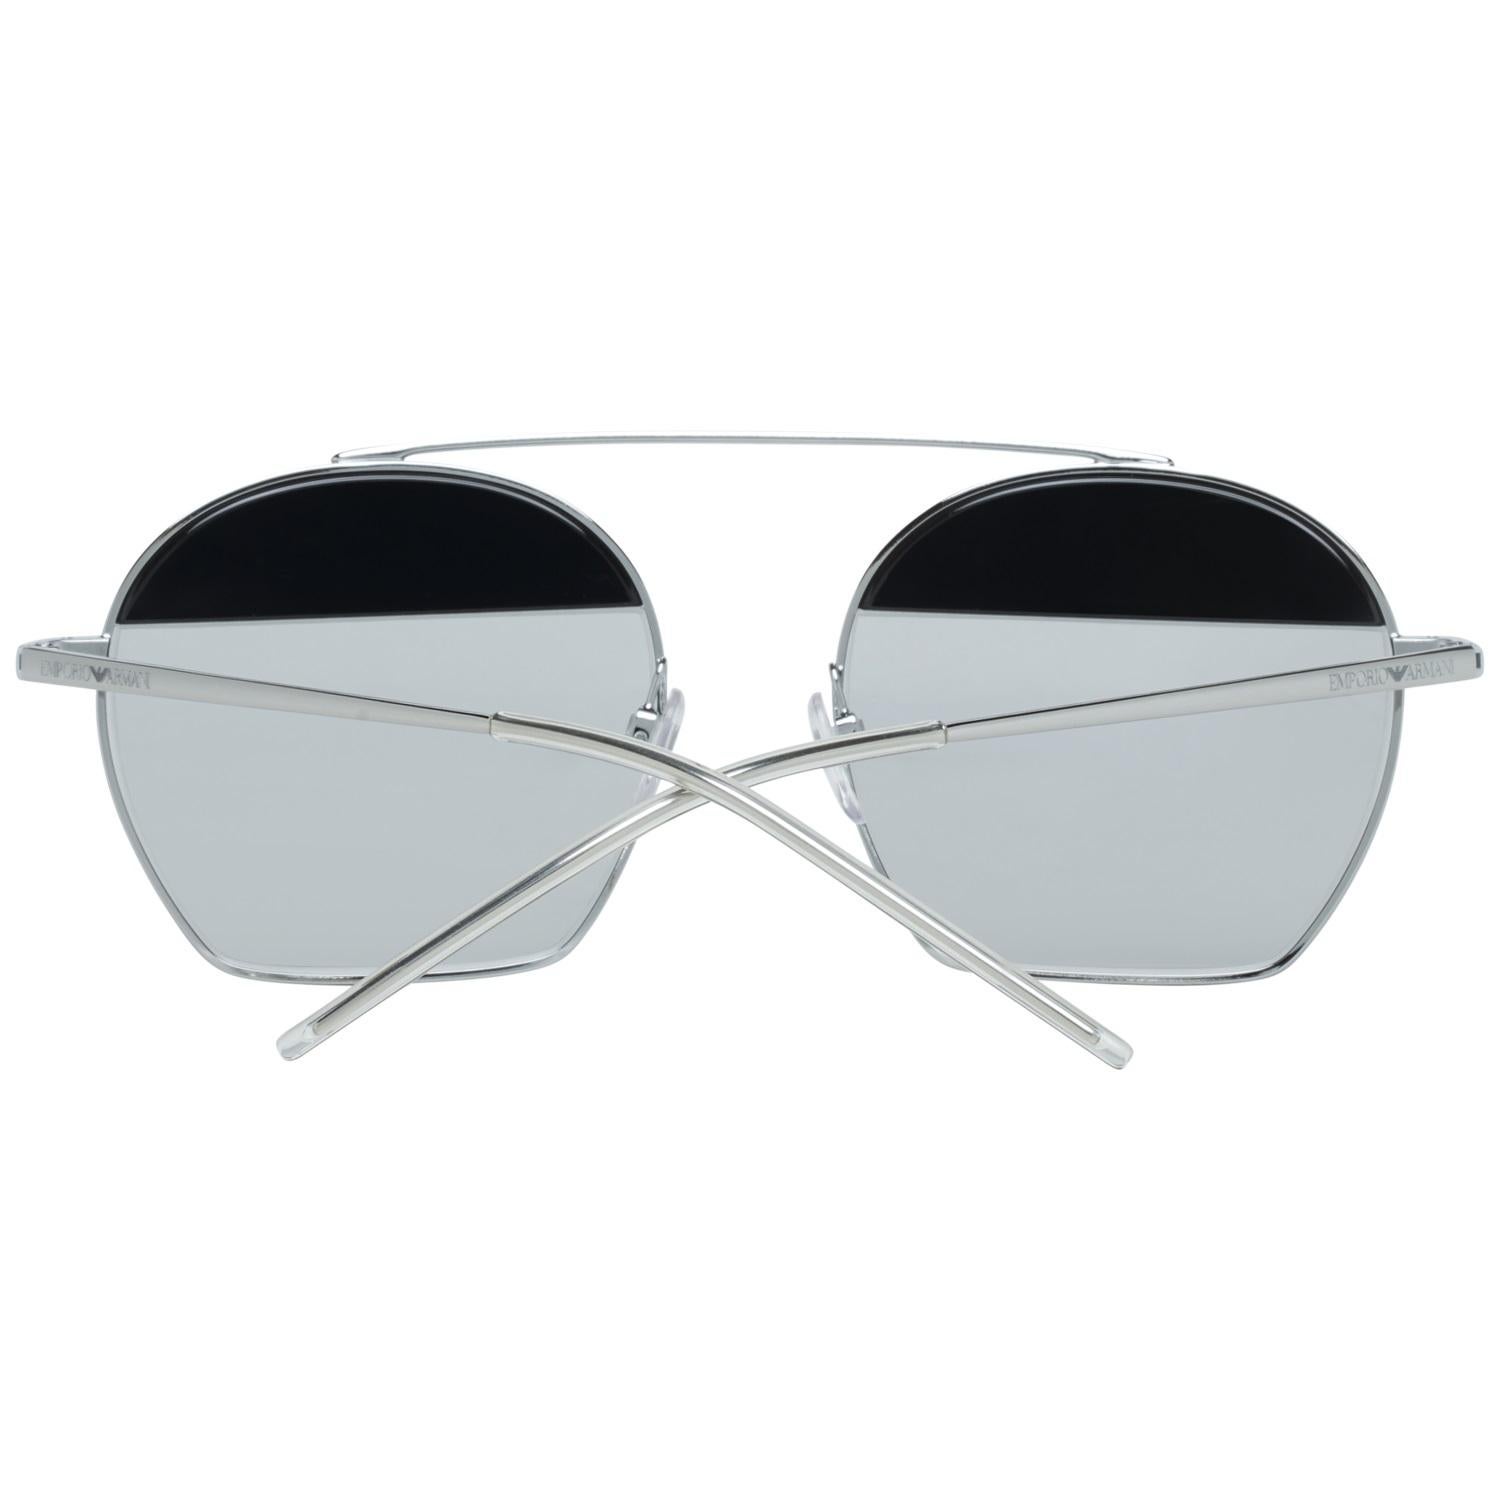 Emporio Armani Mint Unisex Silver Sunglasses EA2086 30156G56 56-19-143 mm 4